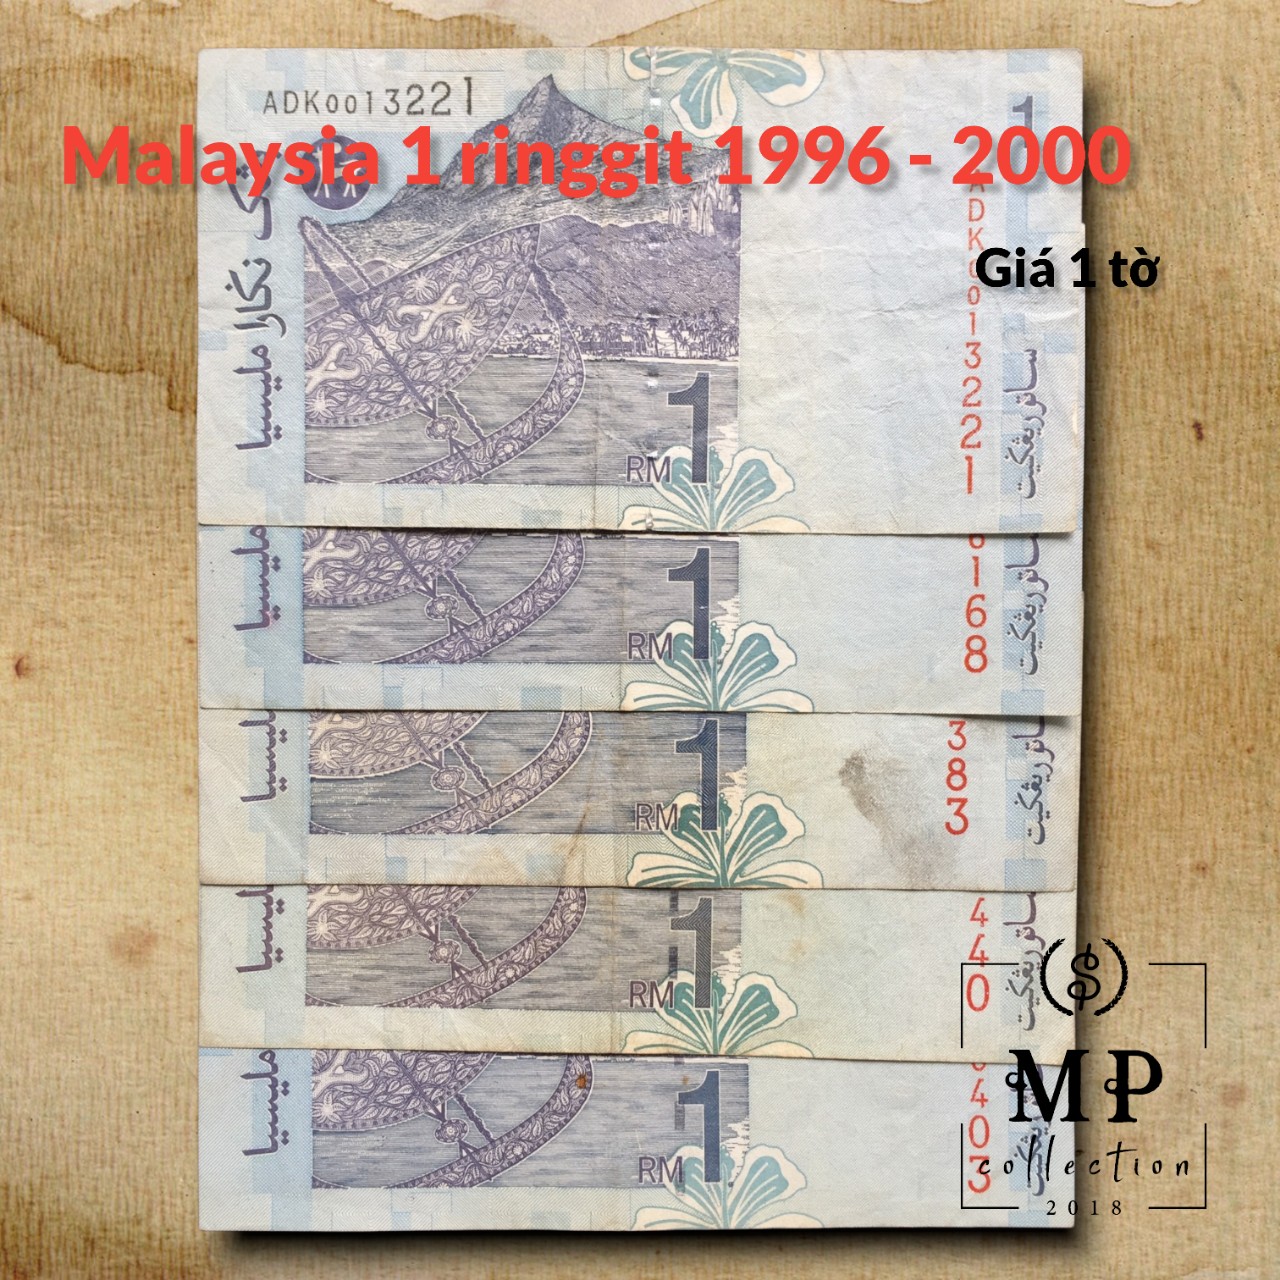 Tiền xưa Malaysia 1 ringgit 1996 2000 chất lượng đã qua sử dụng.